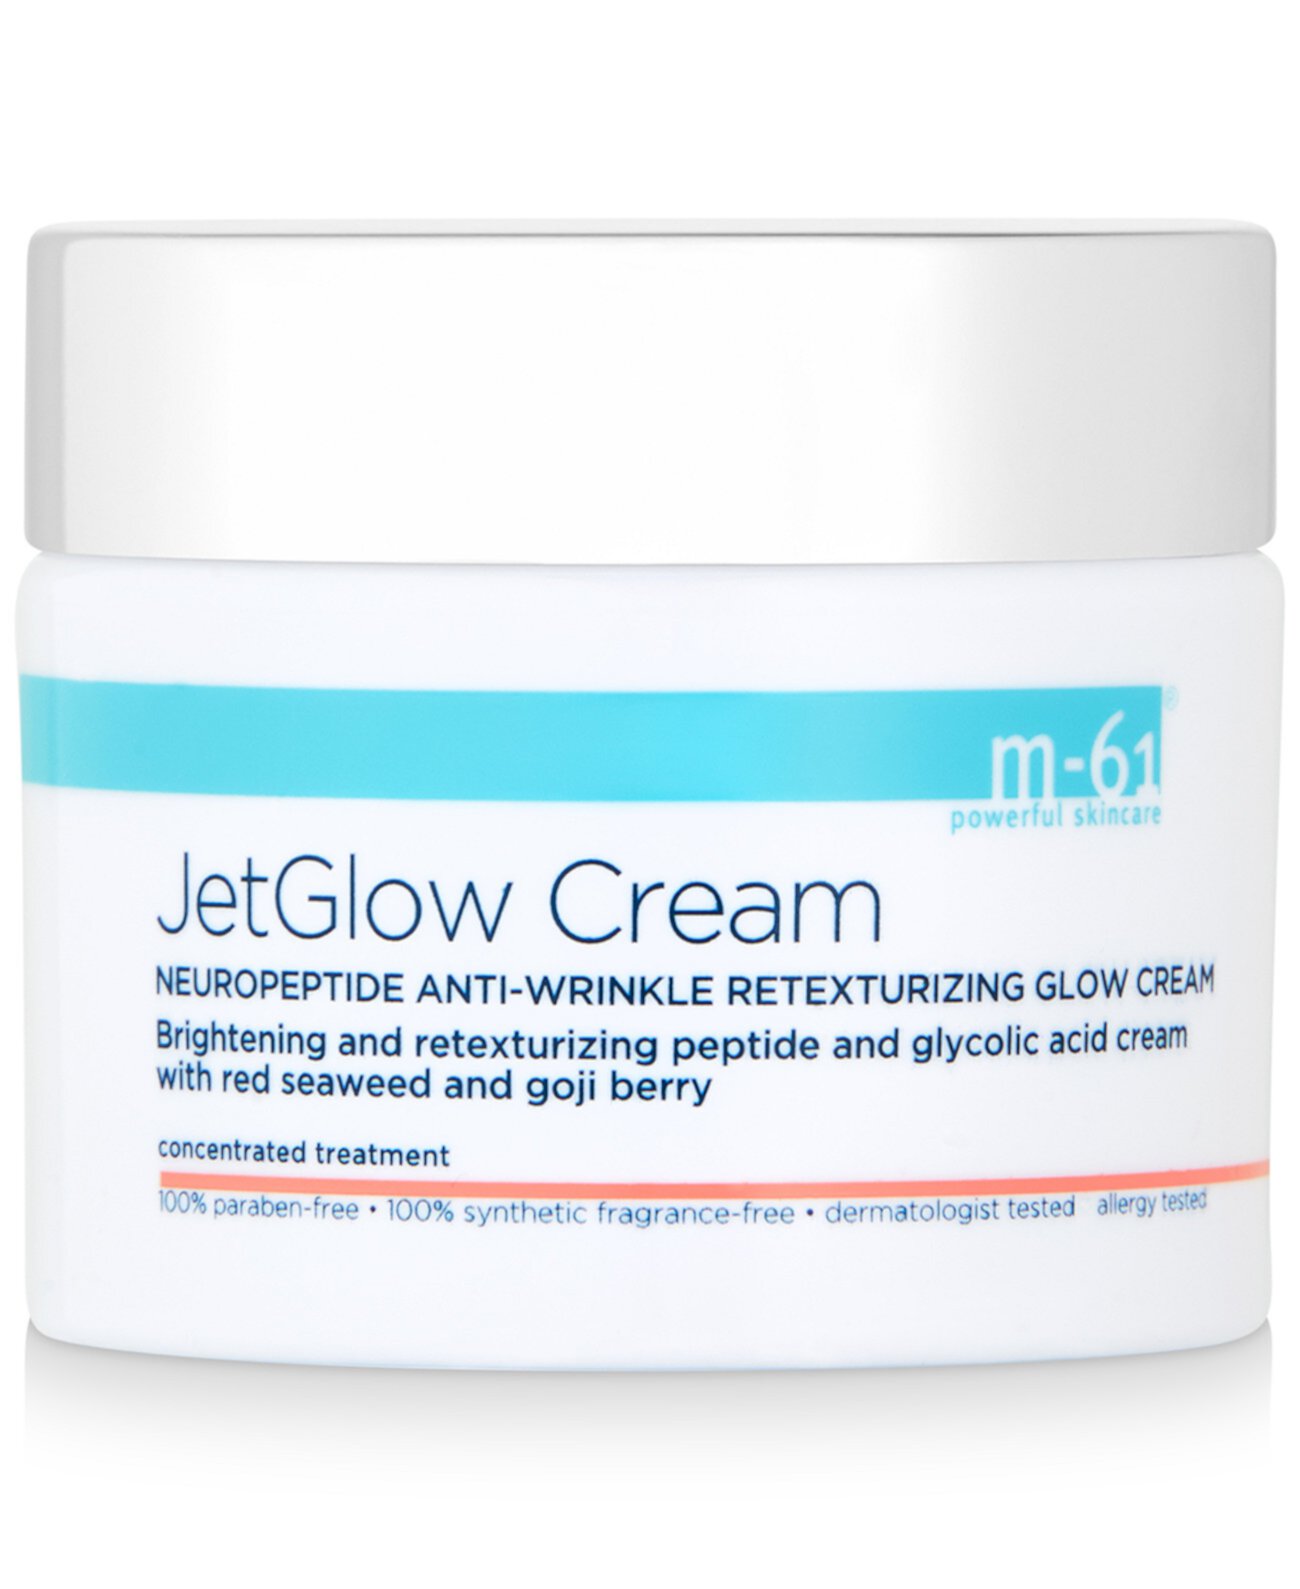 JetGlow Cream Нейропептидный восстанавливающий крем против морщин, 1,7 унции M-61 by Bluemercury